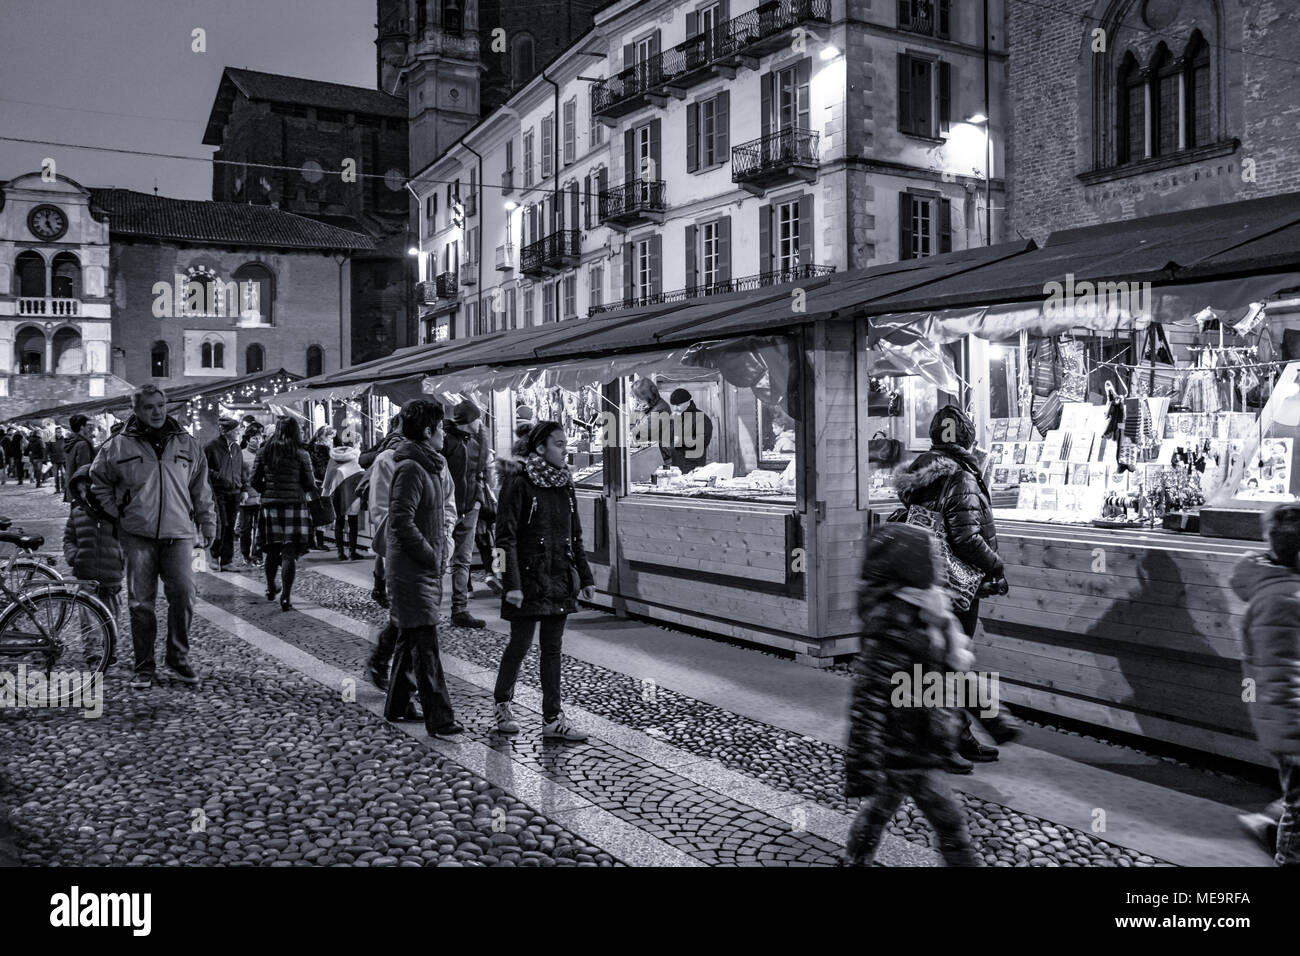 Petit marché de la ville - Piazza della Vittoria - Pavia - Italie Banque D'Images